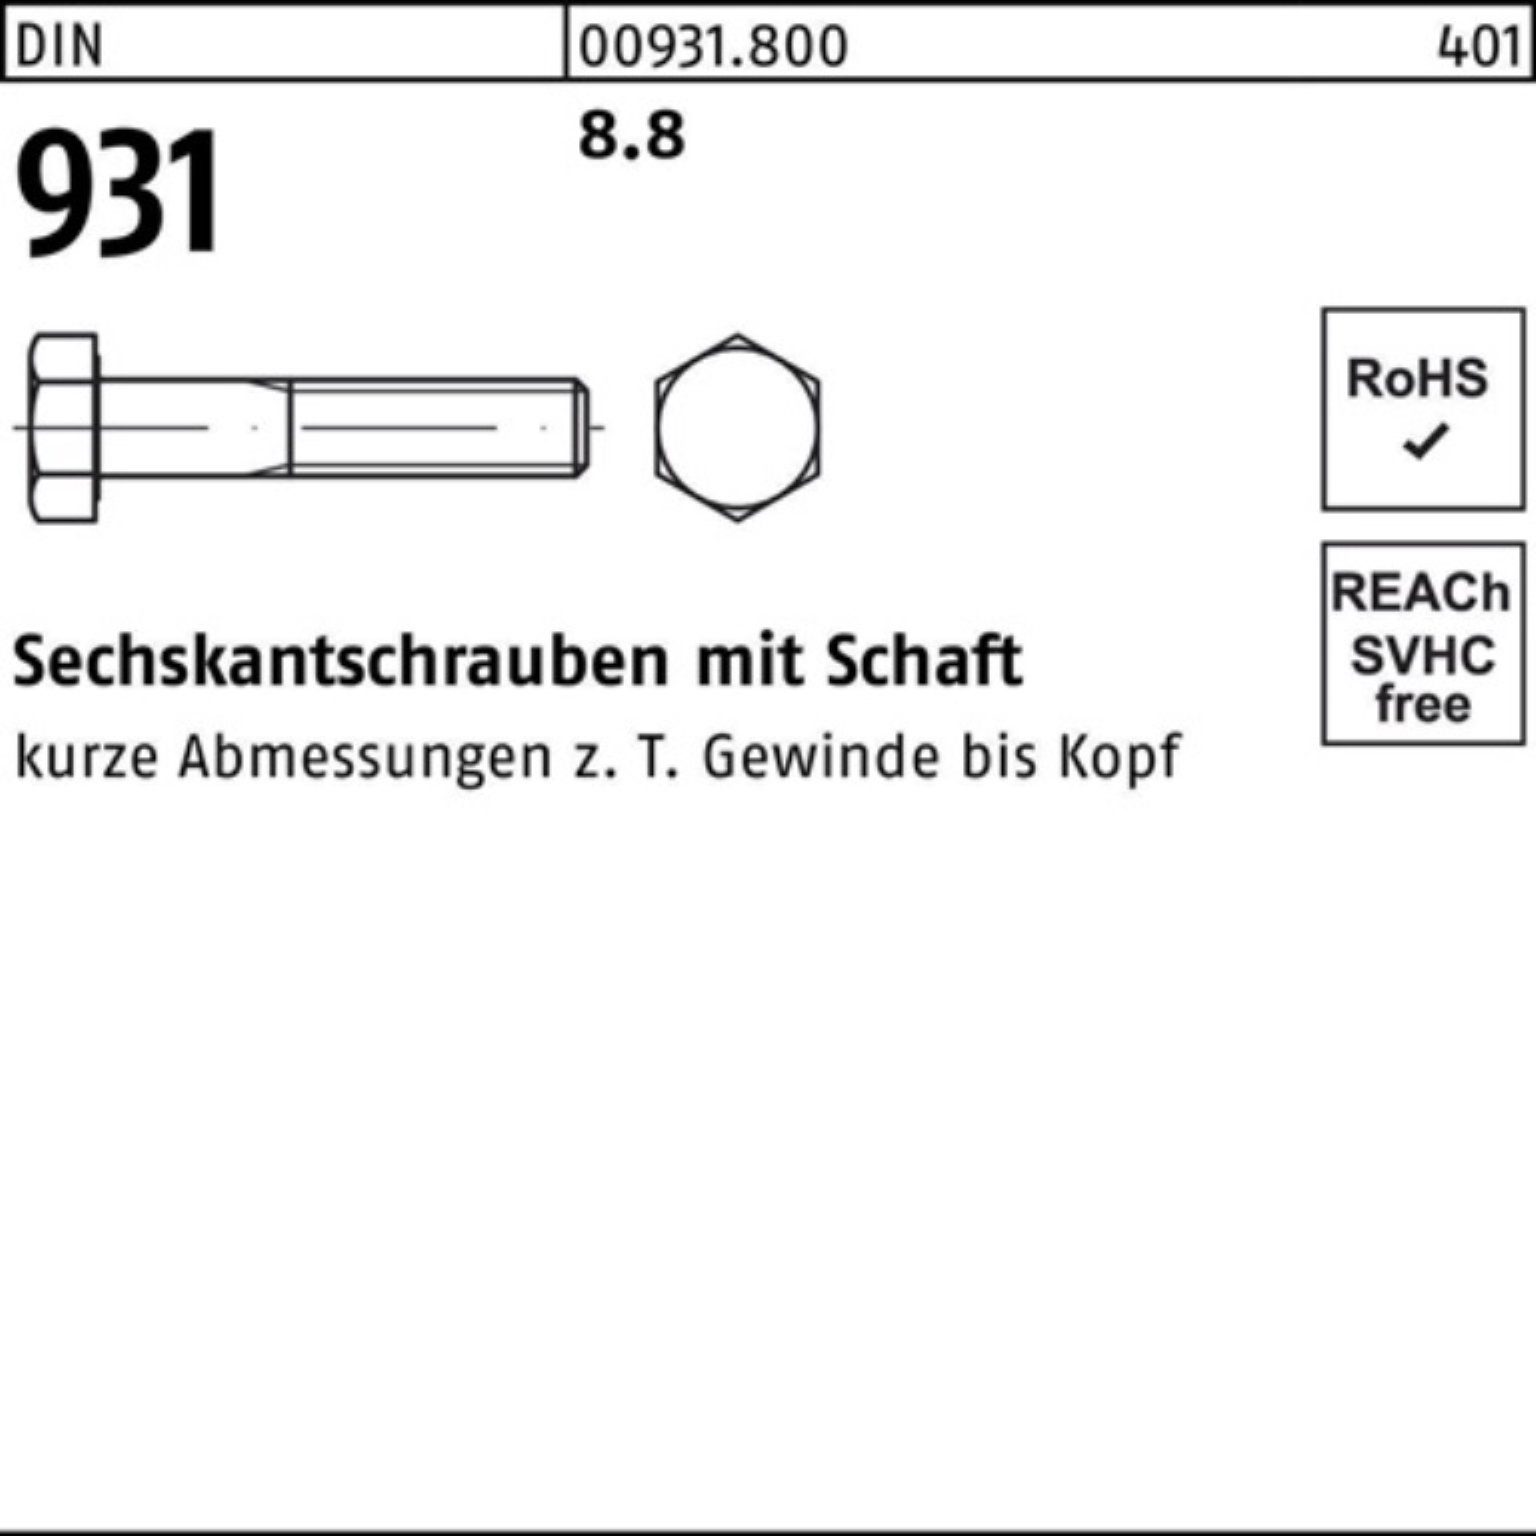 Reyher Sechskantschraube 100er 931 M52x DIN 170 Sechskantschraube Schaft 8.8 Pack DIN 1 Stück